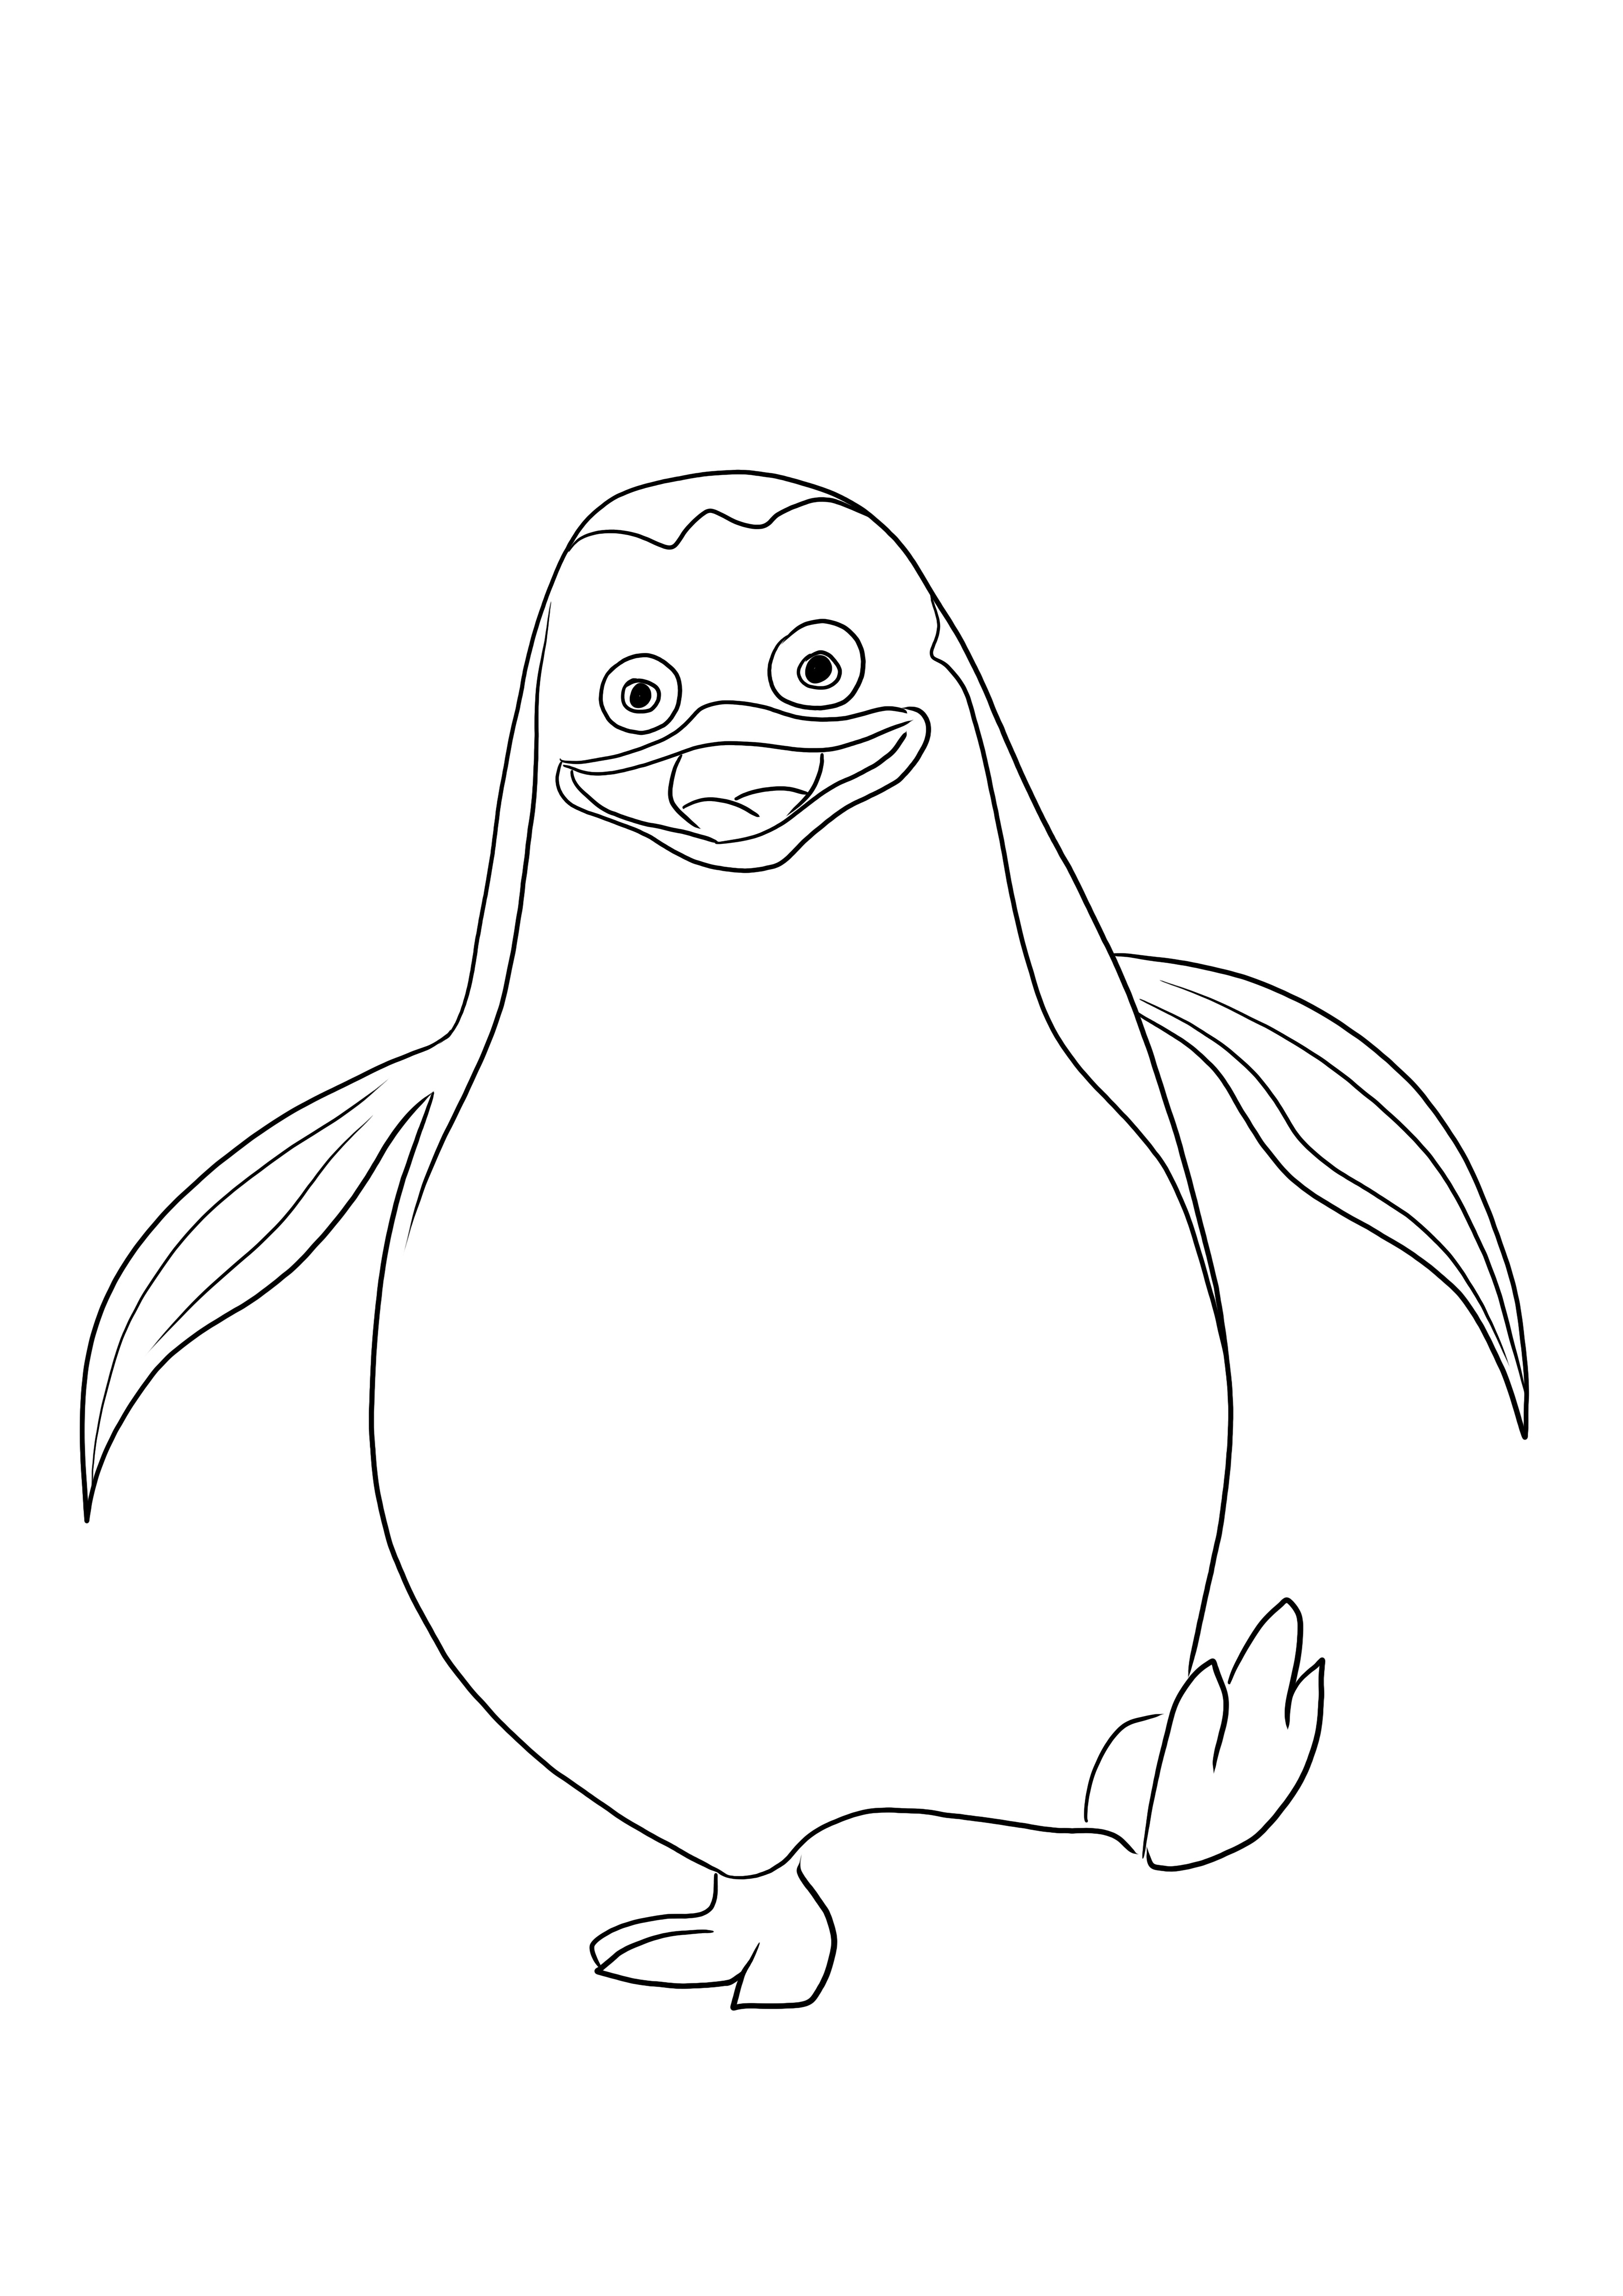 Ein einfach auszumalendes Bild von Private, dem Pinguin, bereit zum Drucken und Ausmalen